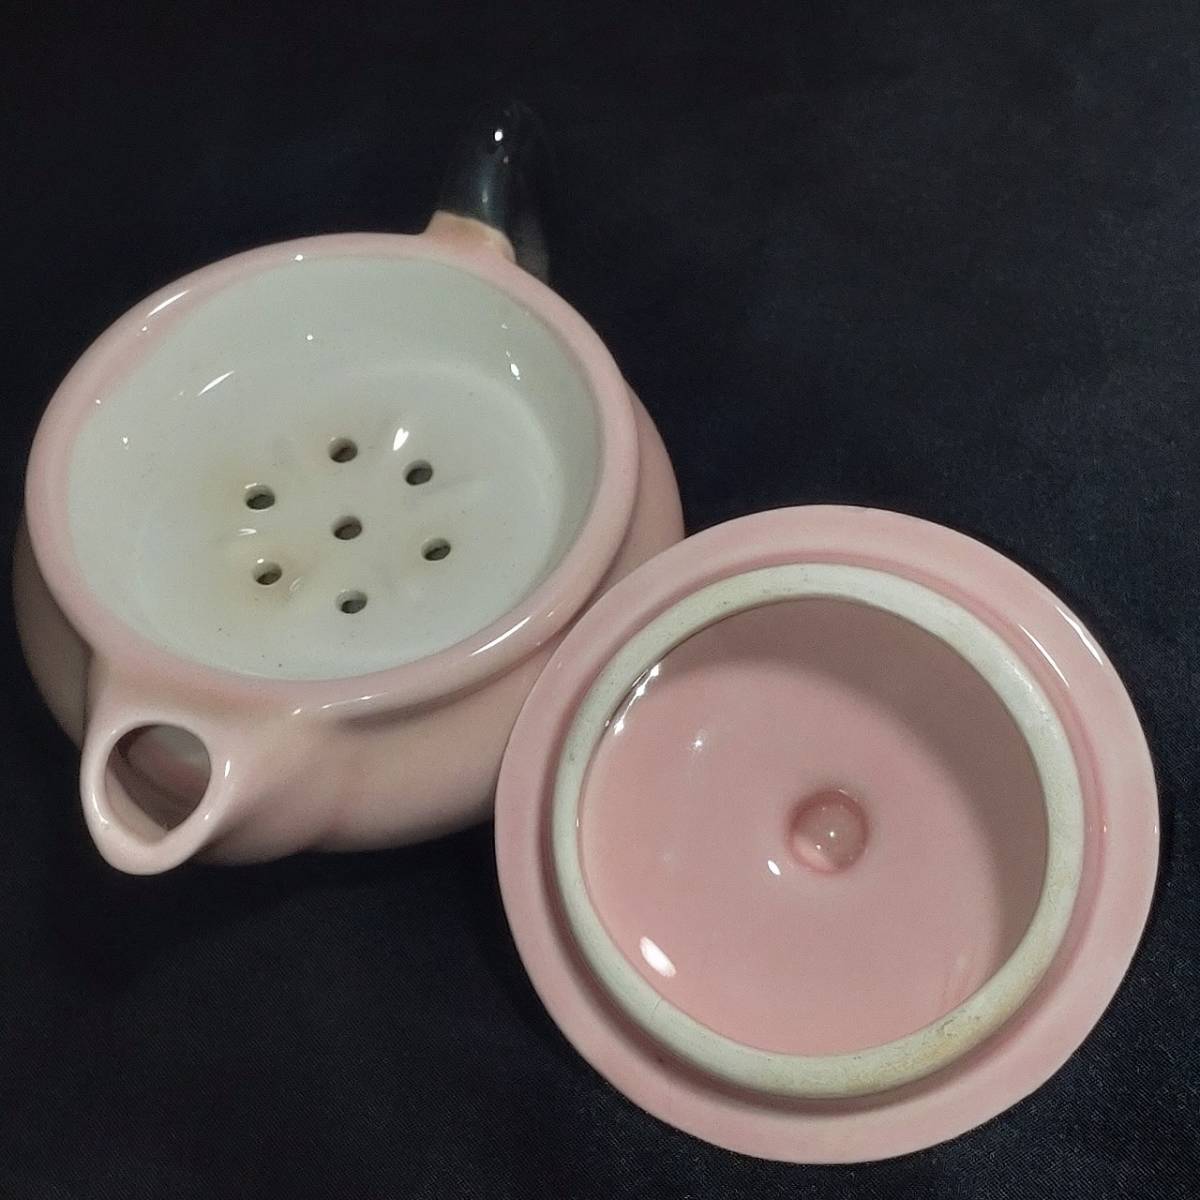 ティ―ポット 小型 陶器 ピンク色 Tea for two 取っ手から注ぎ口まで約11cm 直径約8cm 高さ約5cm 【3954】_画像2